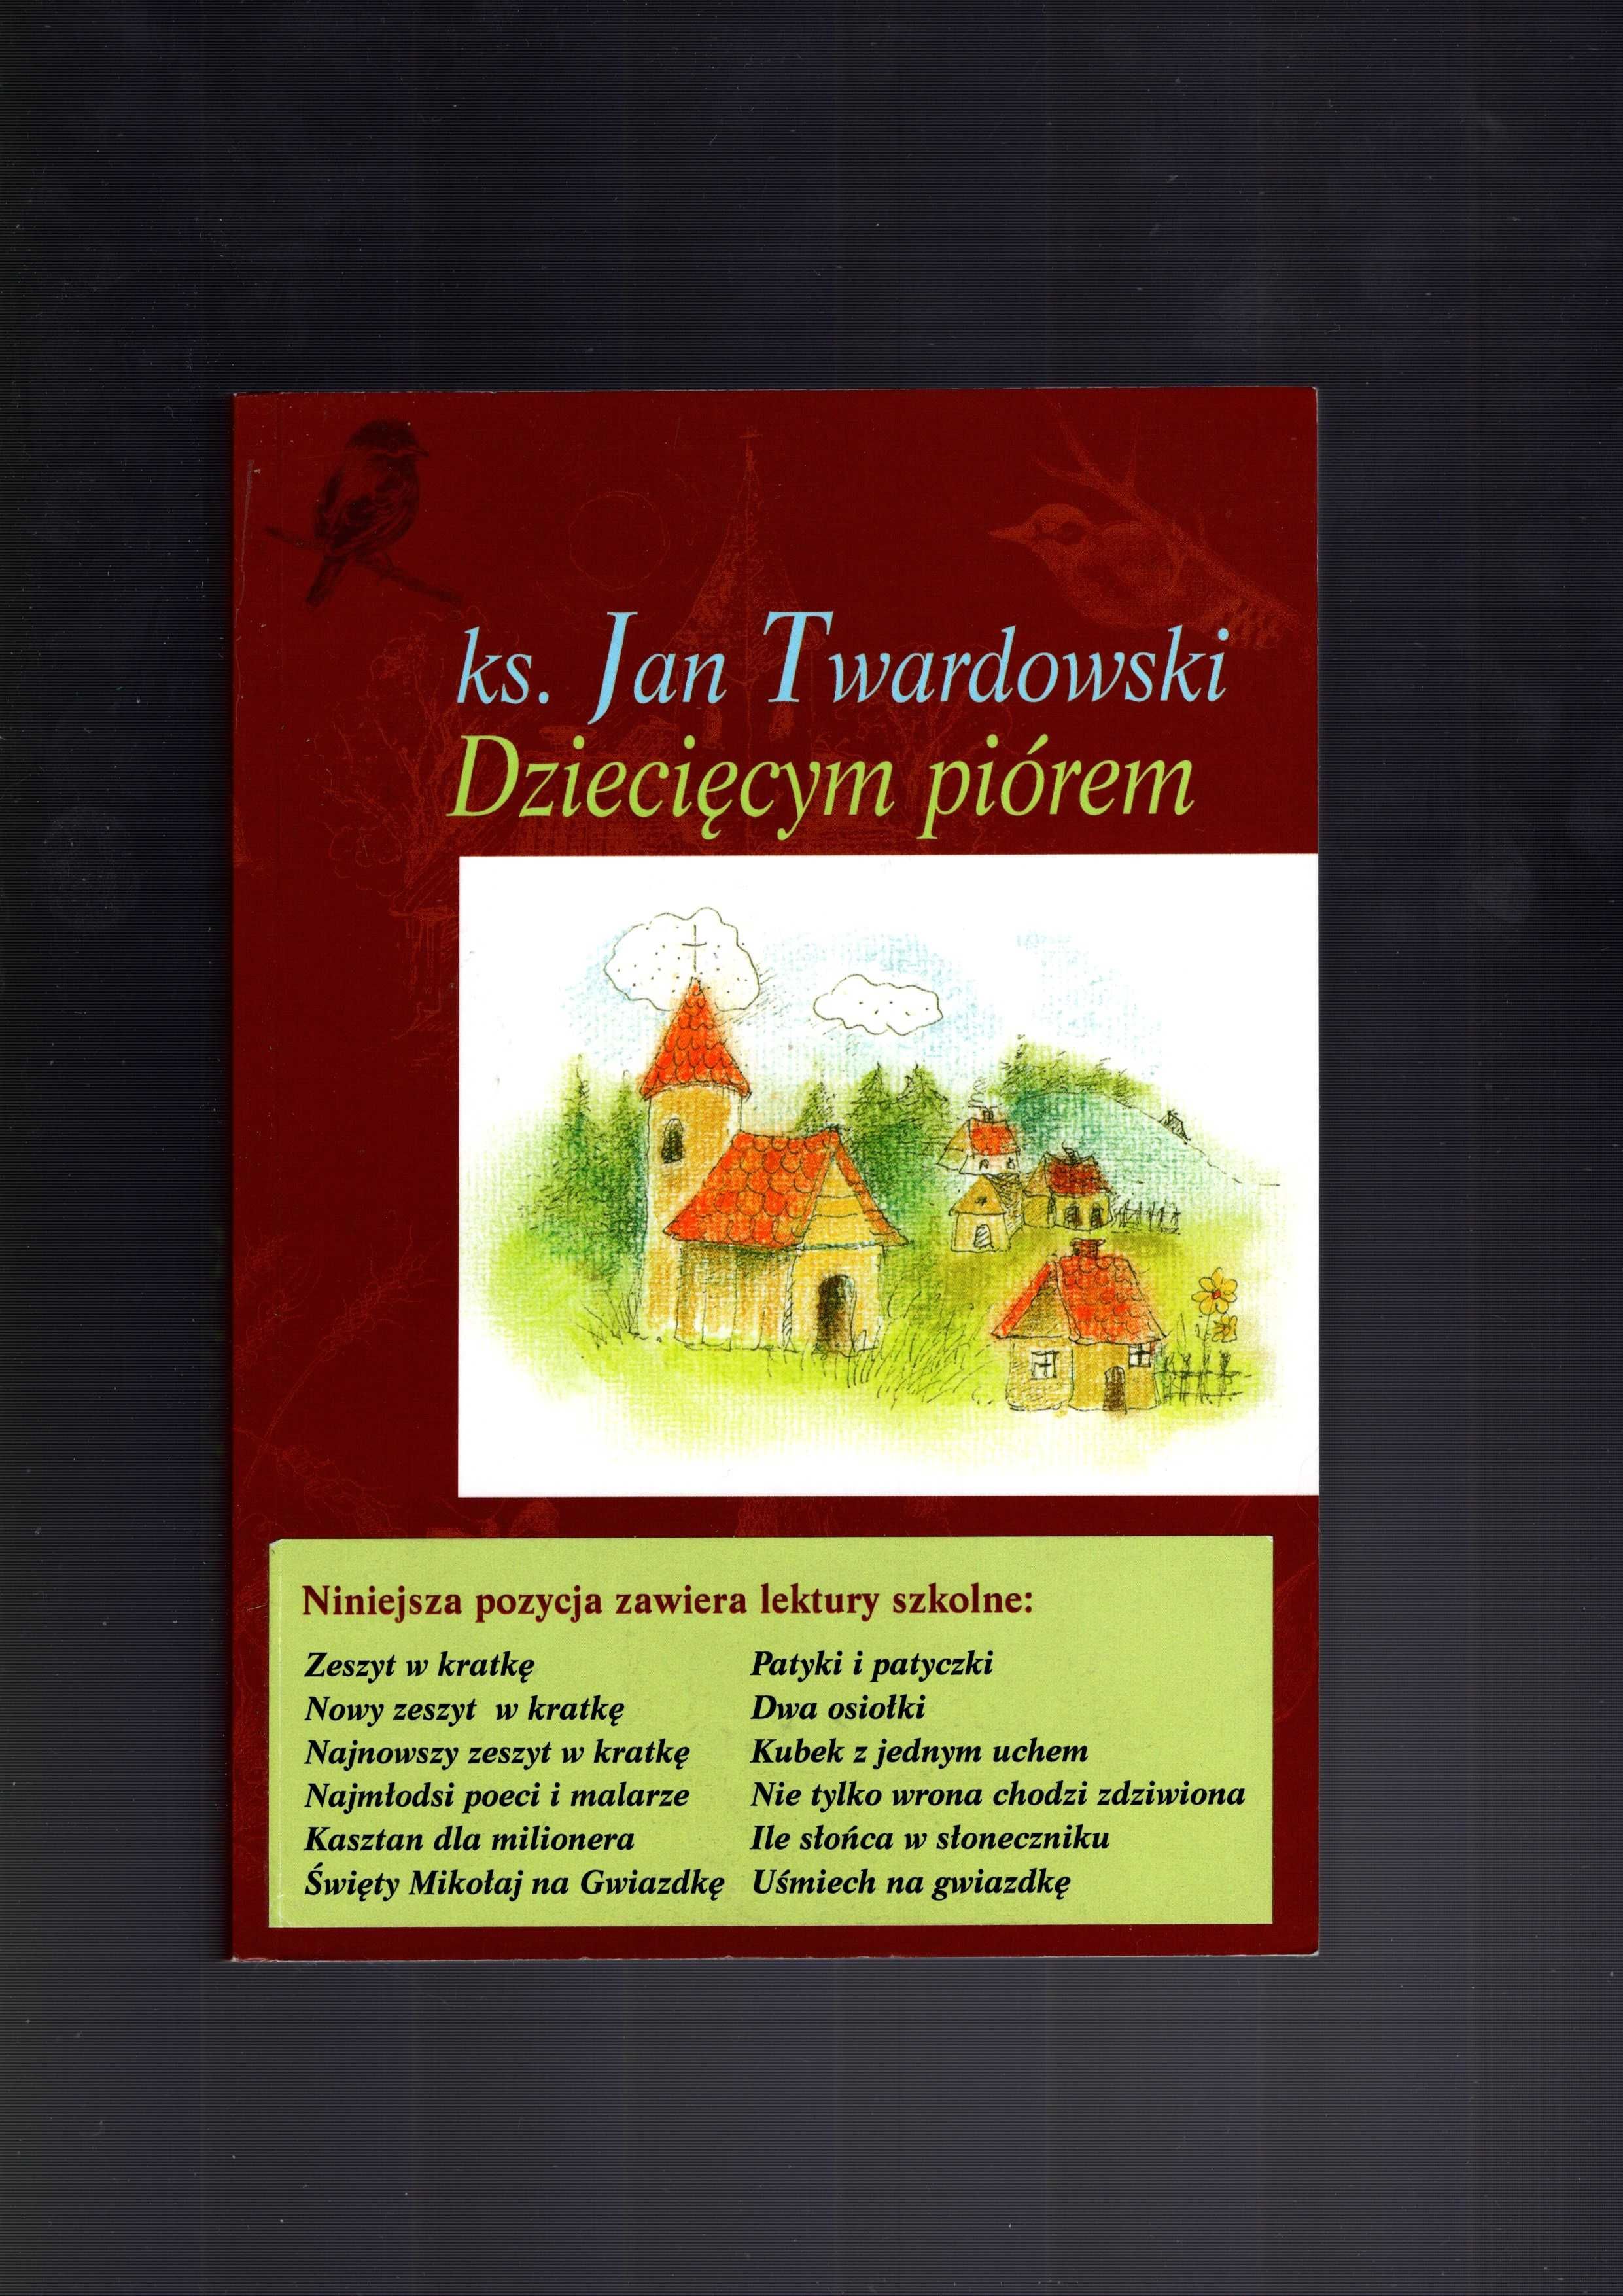 Ks. Jan Twardowski - Dziecięcym piórem - Utwory zebrane (tom I-III)